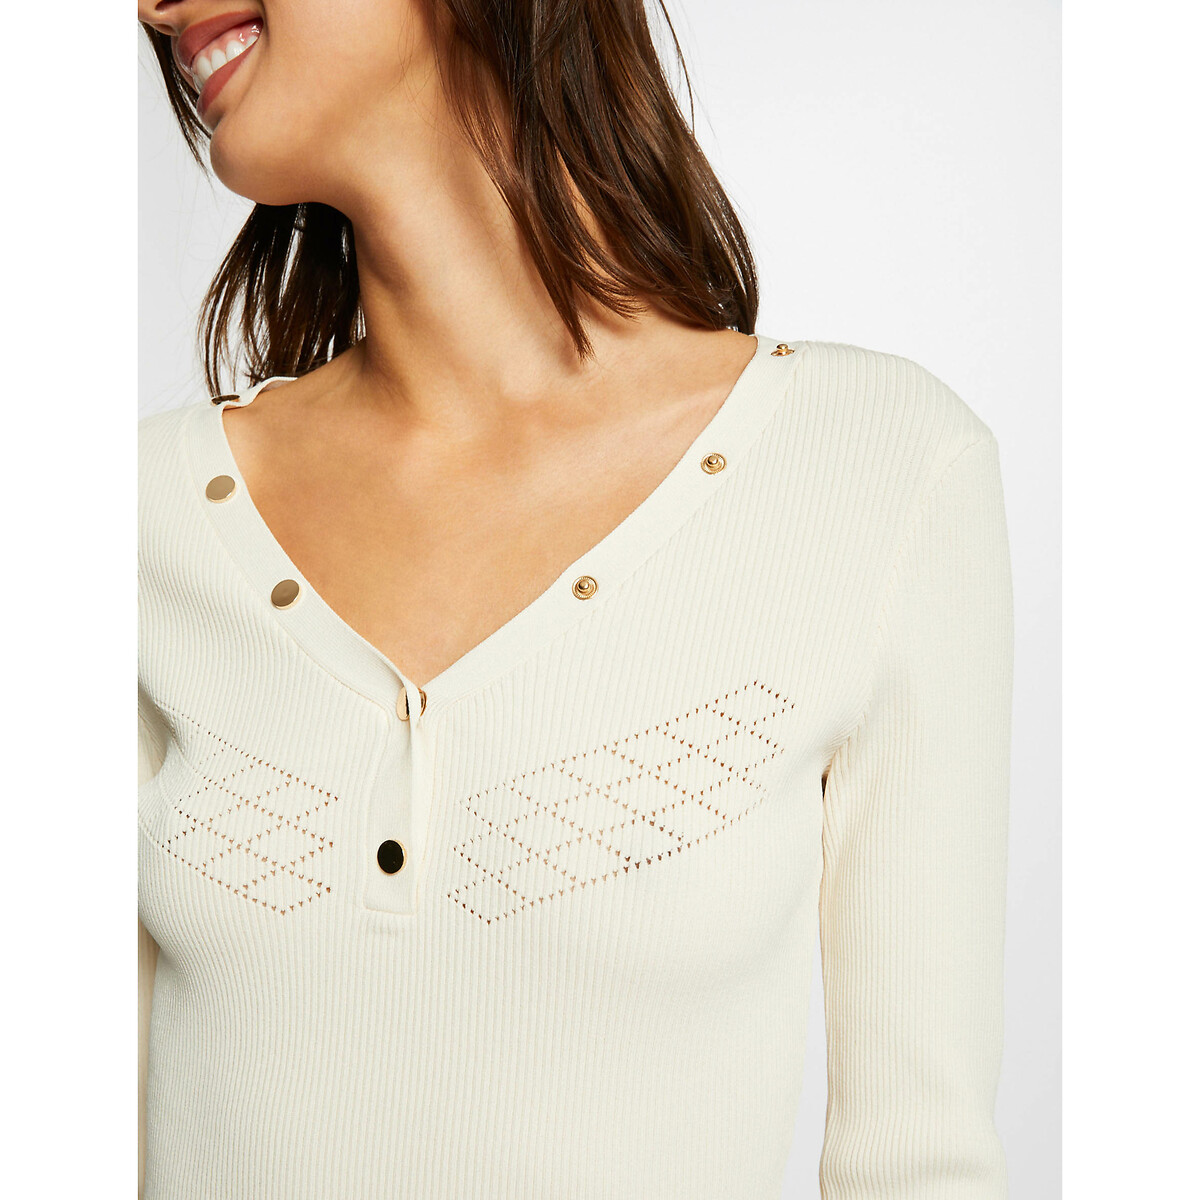 Пуловер MORGAN С рукавами 34 с пуговицами M белый, размер M - фото 4